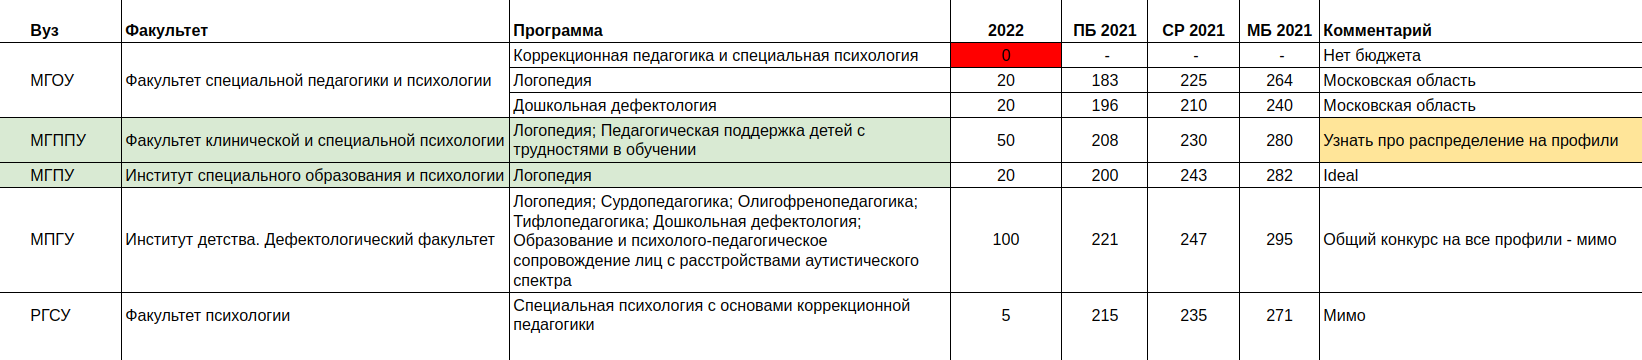 Наша таблица вариантов для поступления на 2022 год по Москве